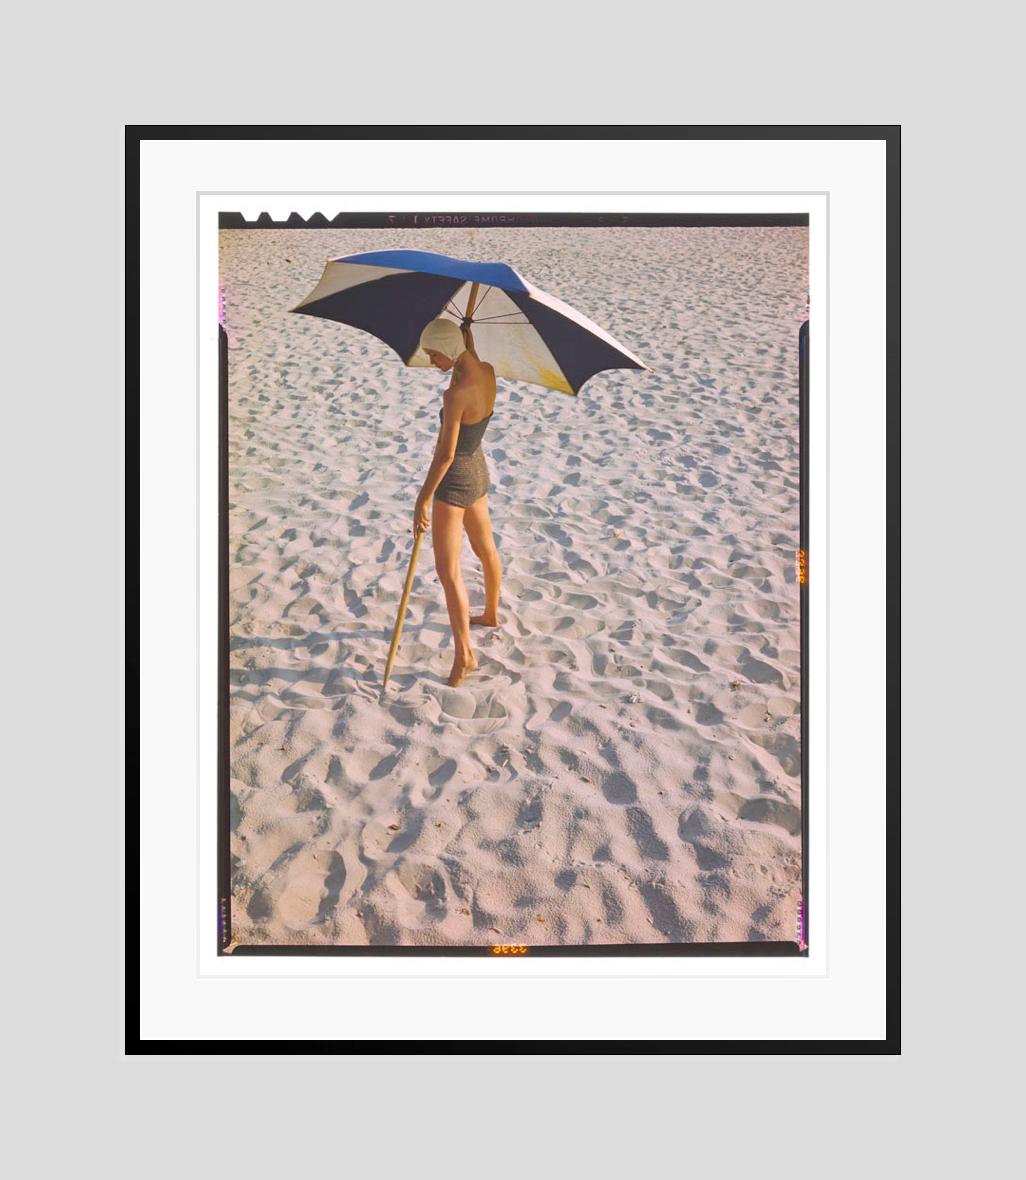 La fille de la plage 

1948

Séance de photos de mode de vêtements de plage avec parasols

par Toni Frissell

40 x 30